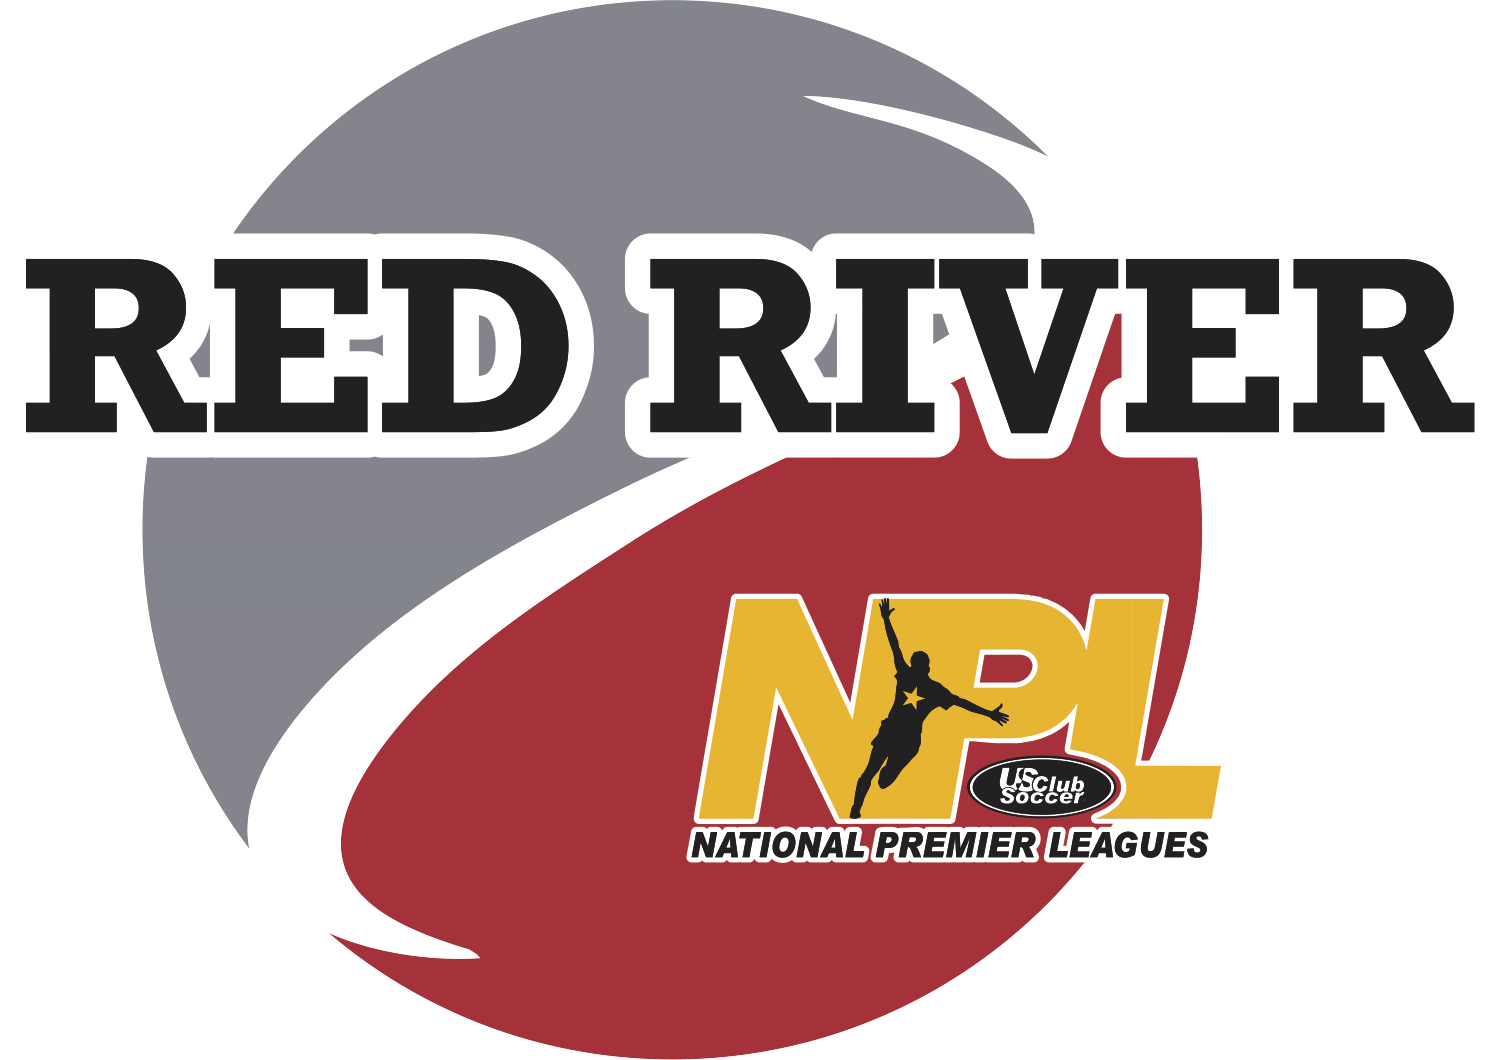 NPL Red River Announces League Structure Changes